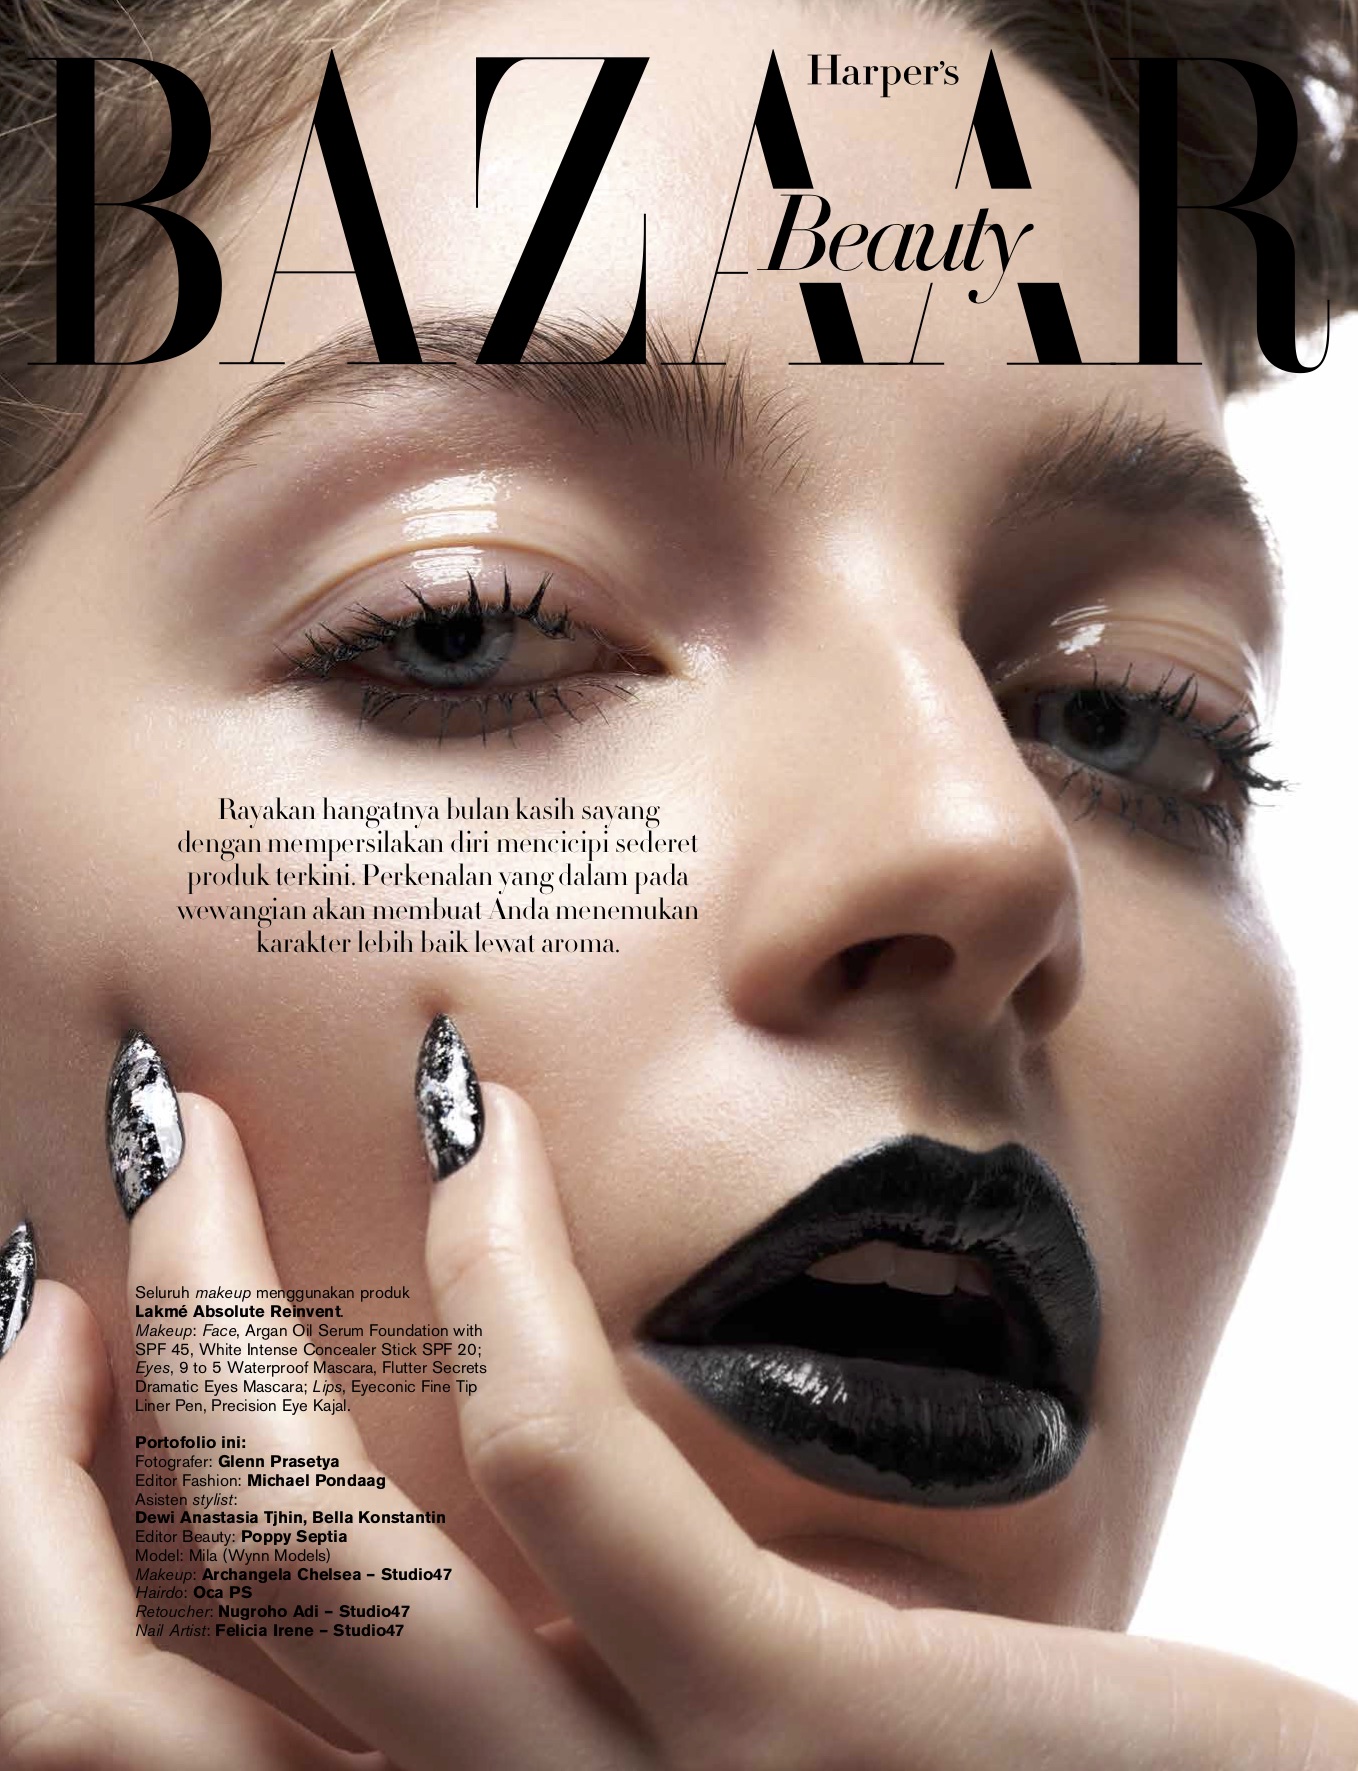 bazaar beauty cover.jpg